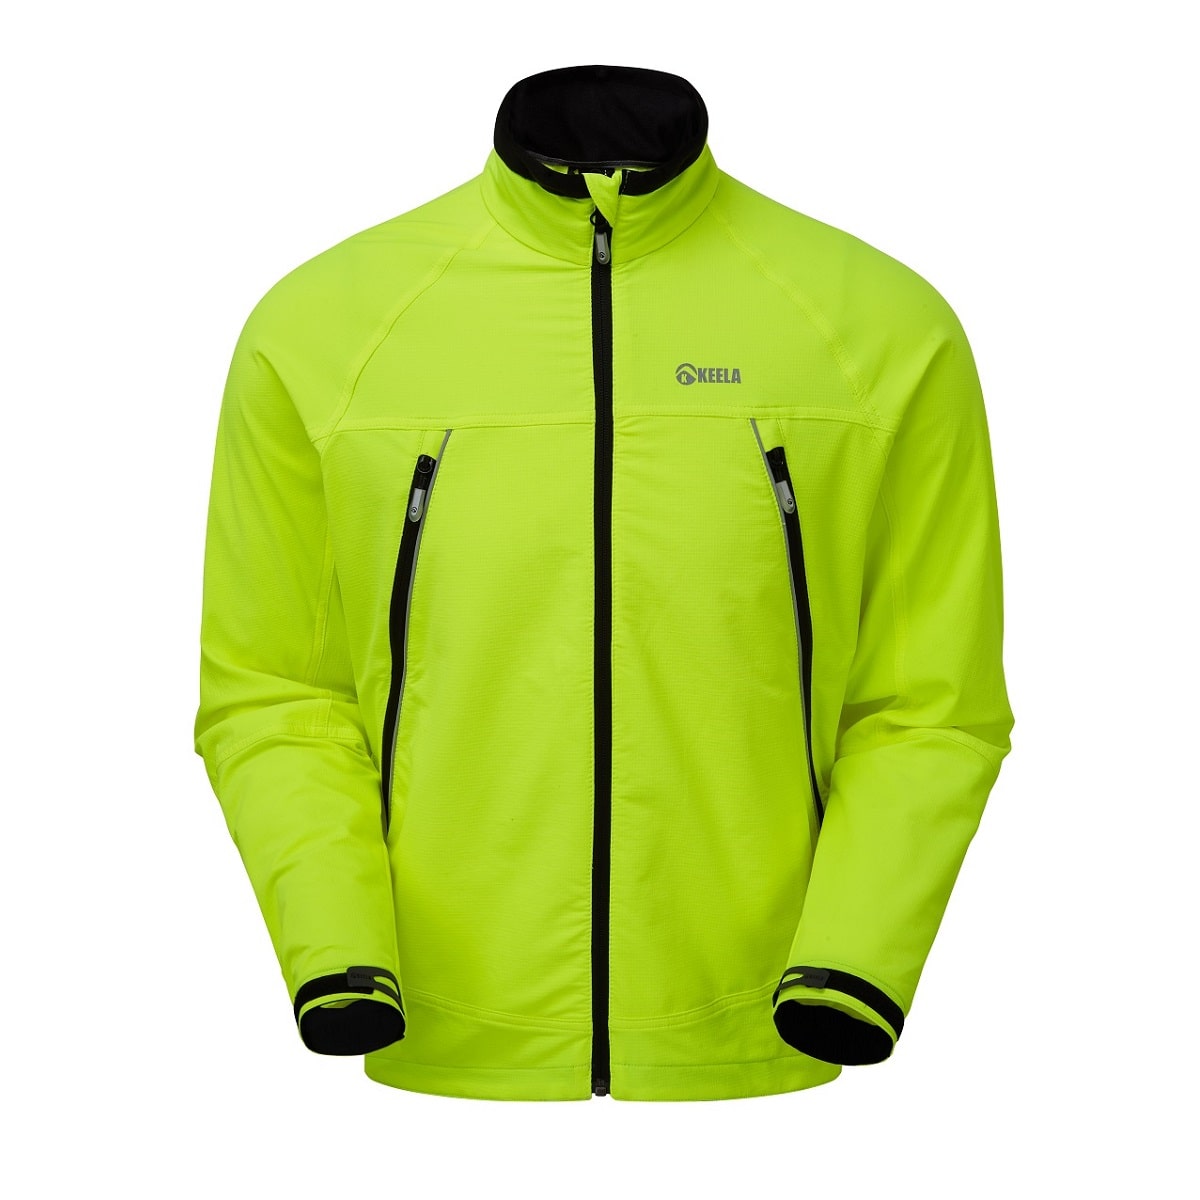 Keela waterproof trail jacket test